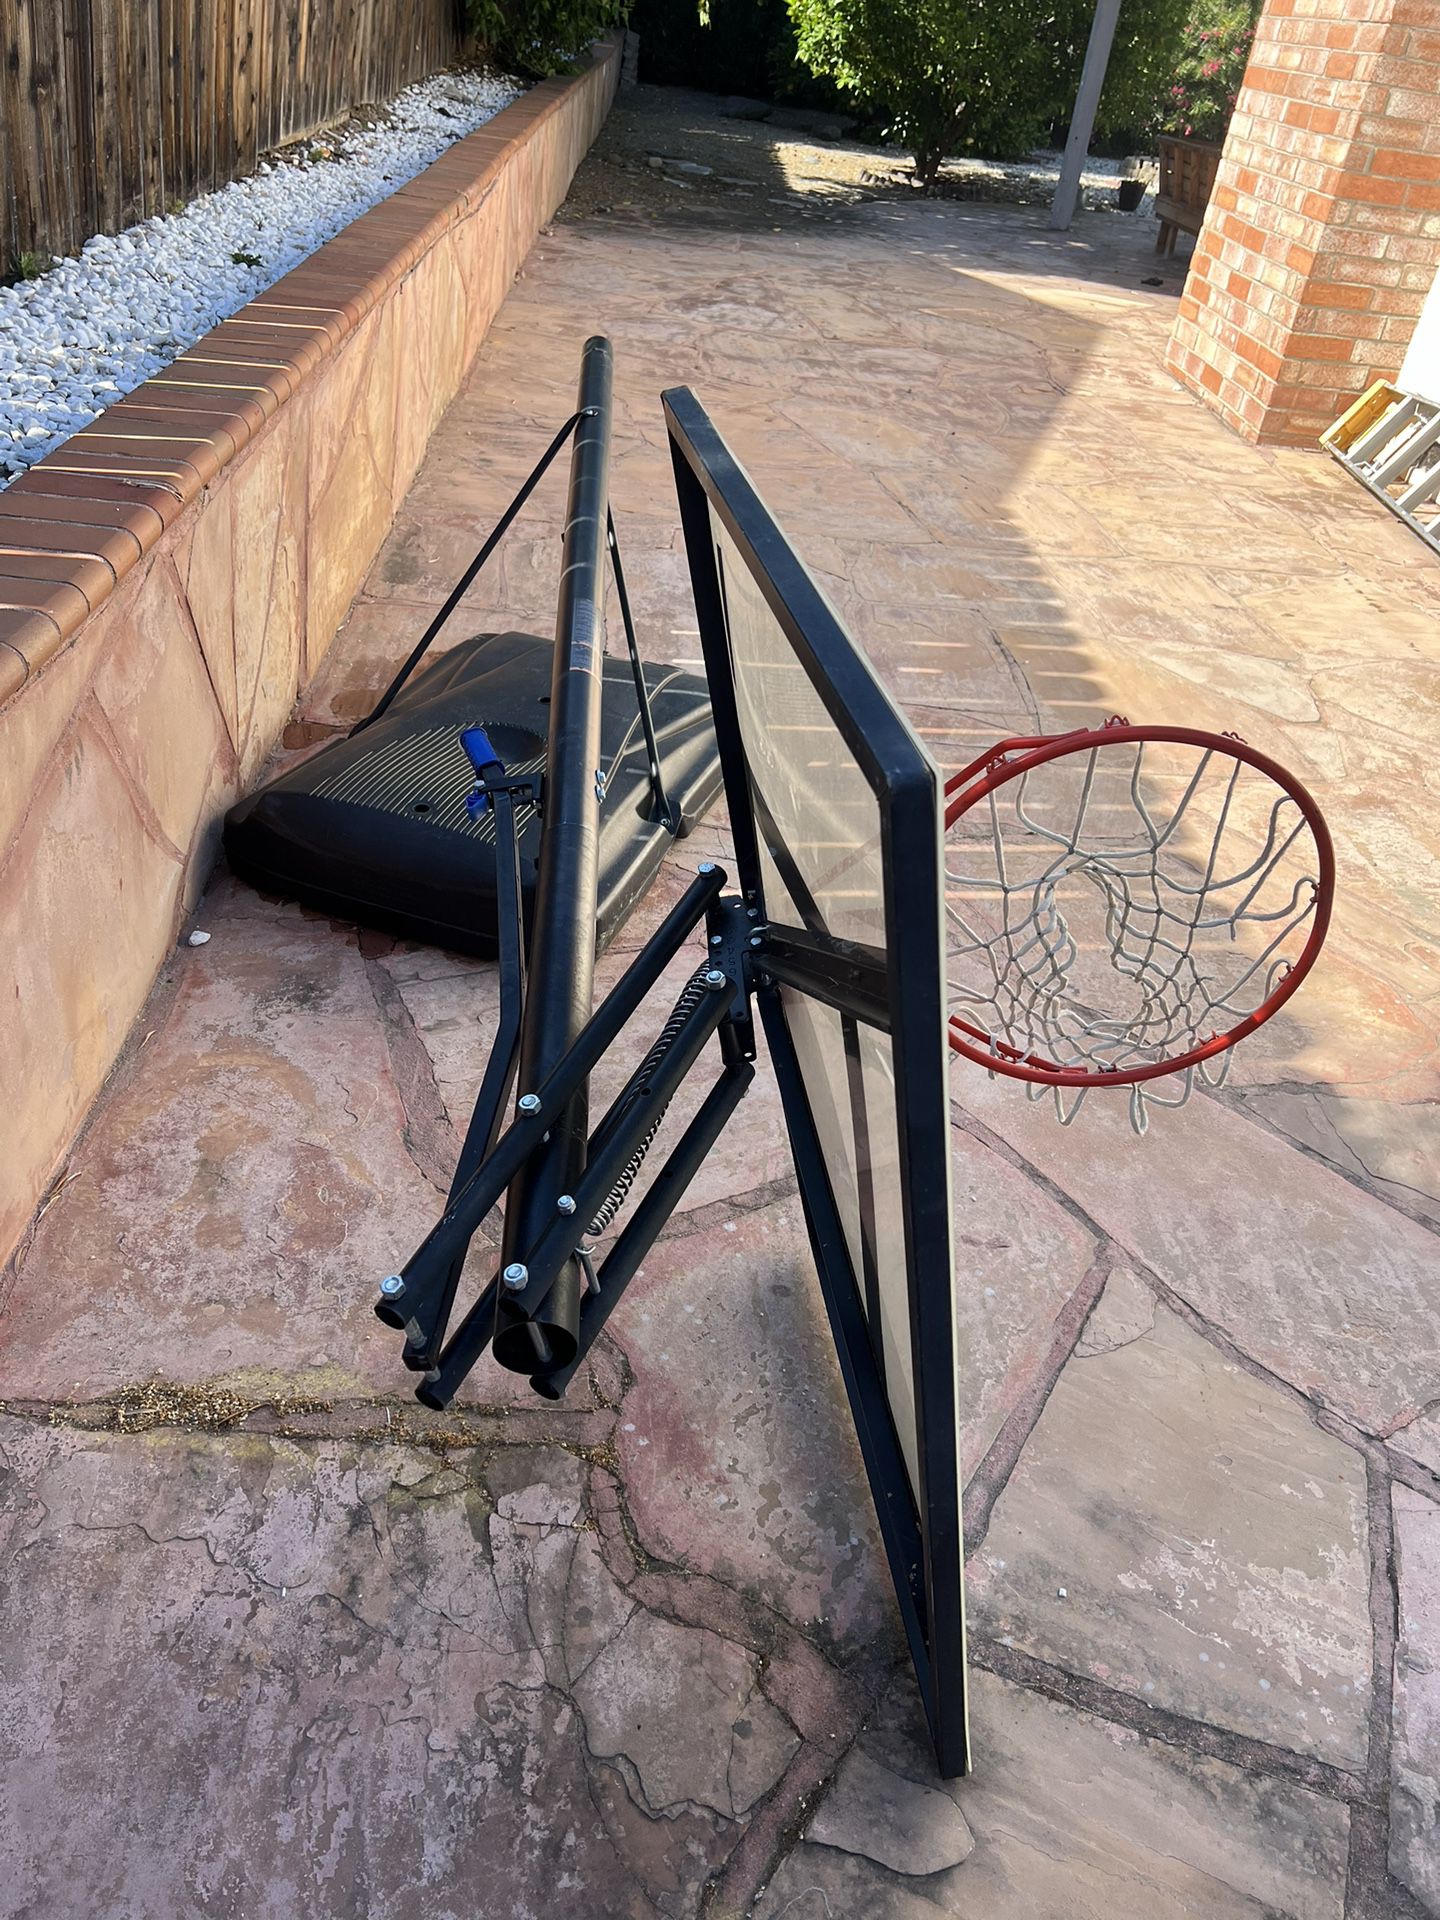 Free Basketball Hoop. Needs Repair 